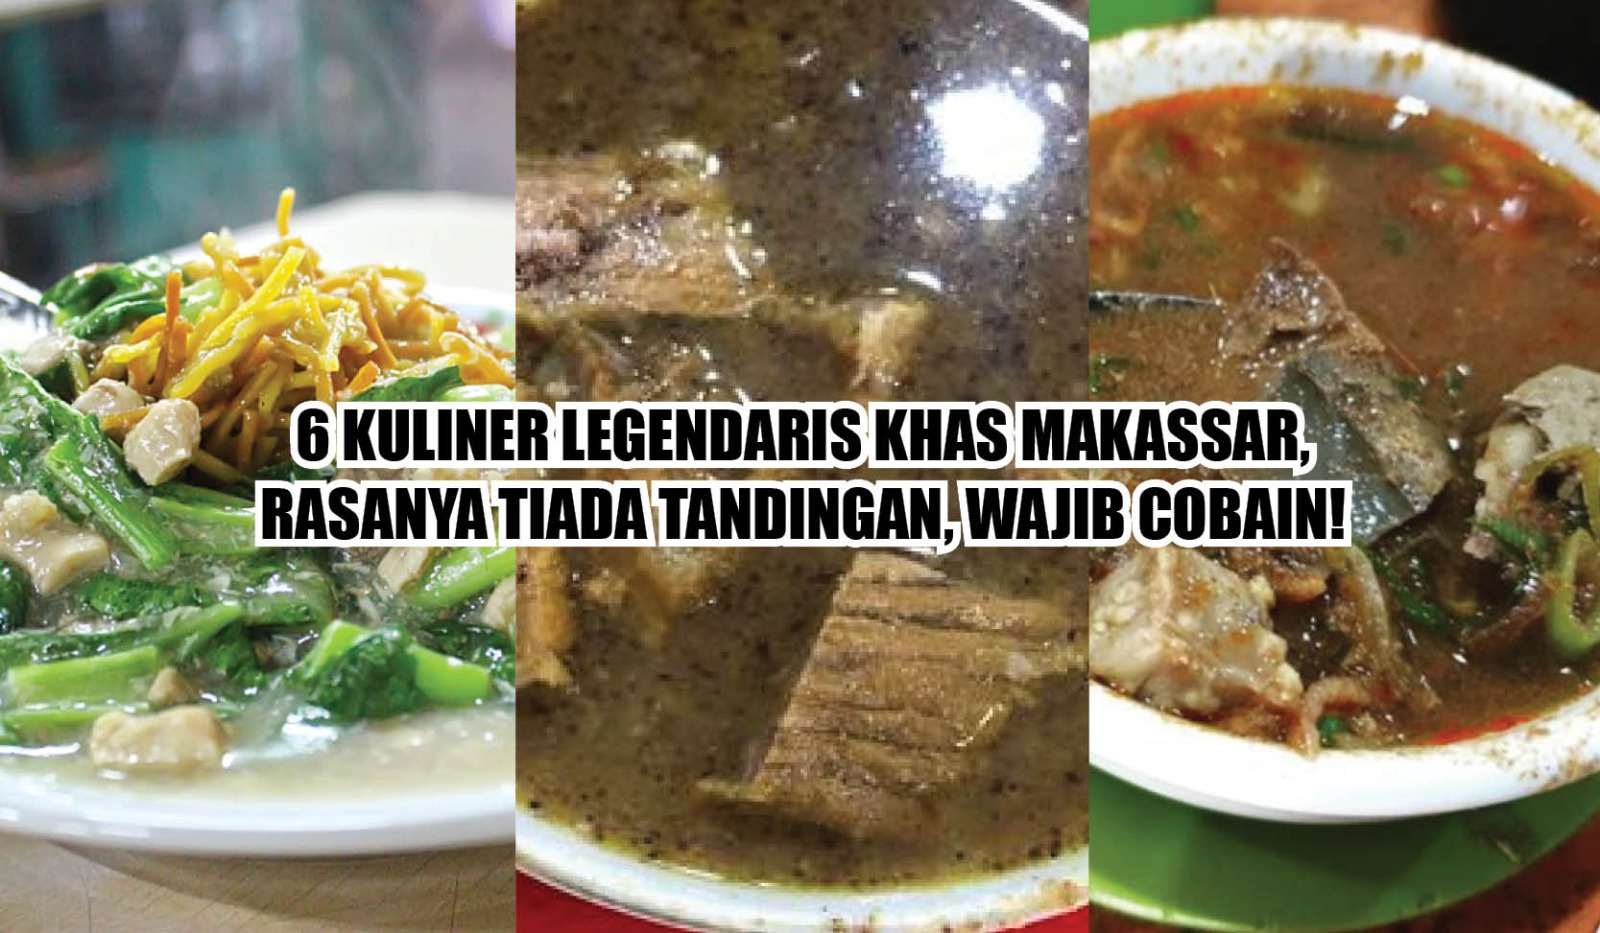 6 Kuliner Legendaris Khas Makassar, Rasanya Tiada Tandingan, Wajib Cobain!